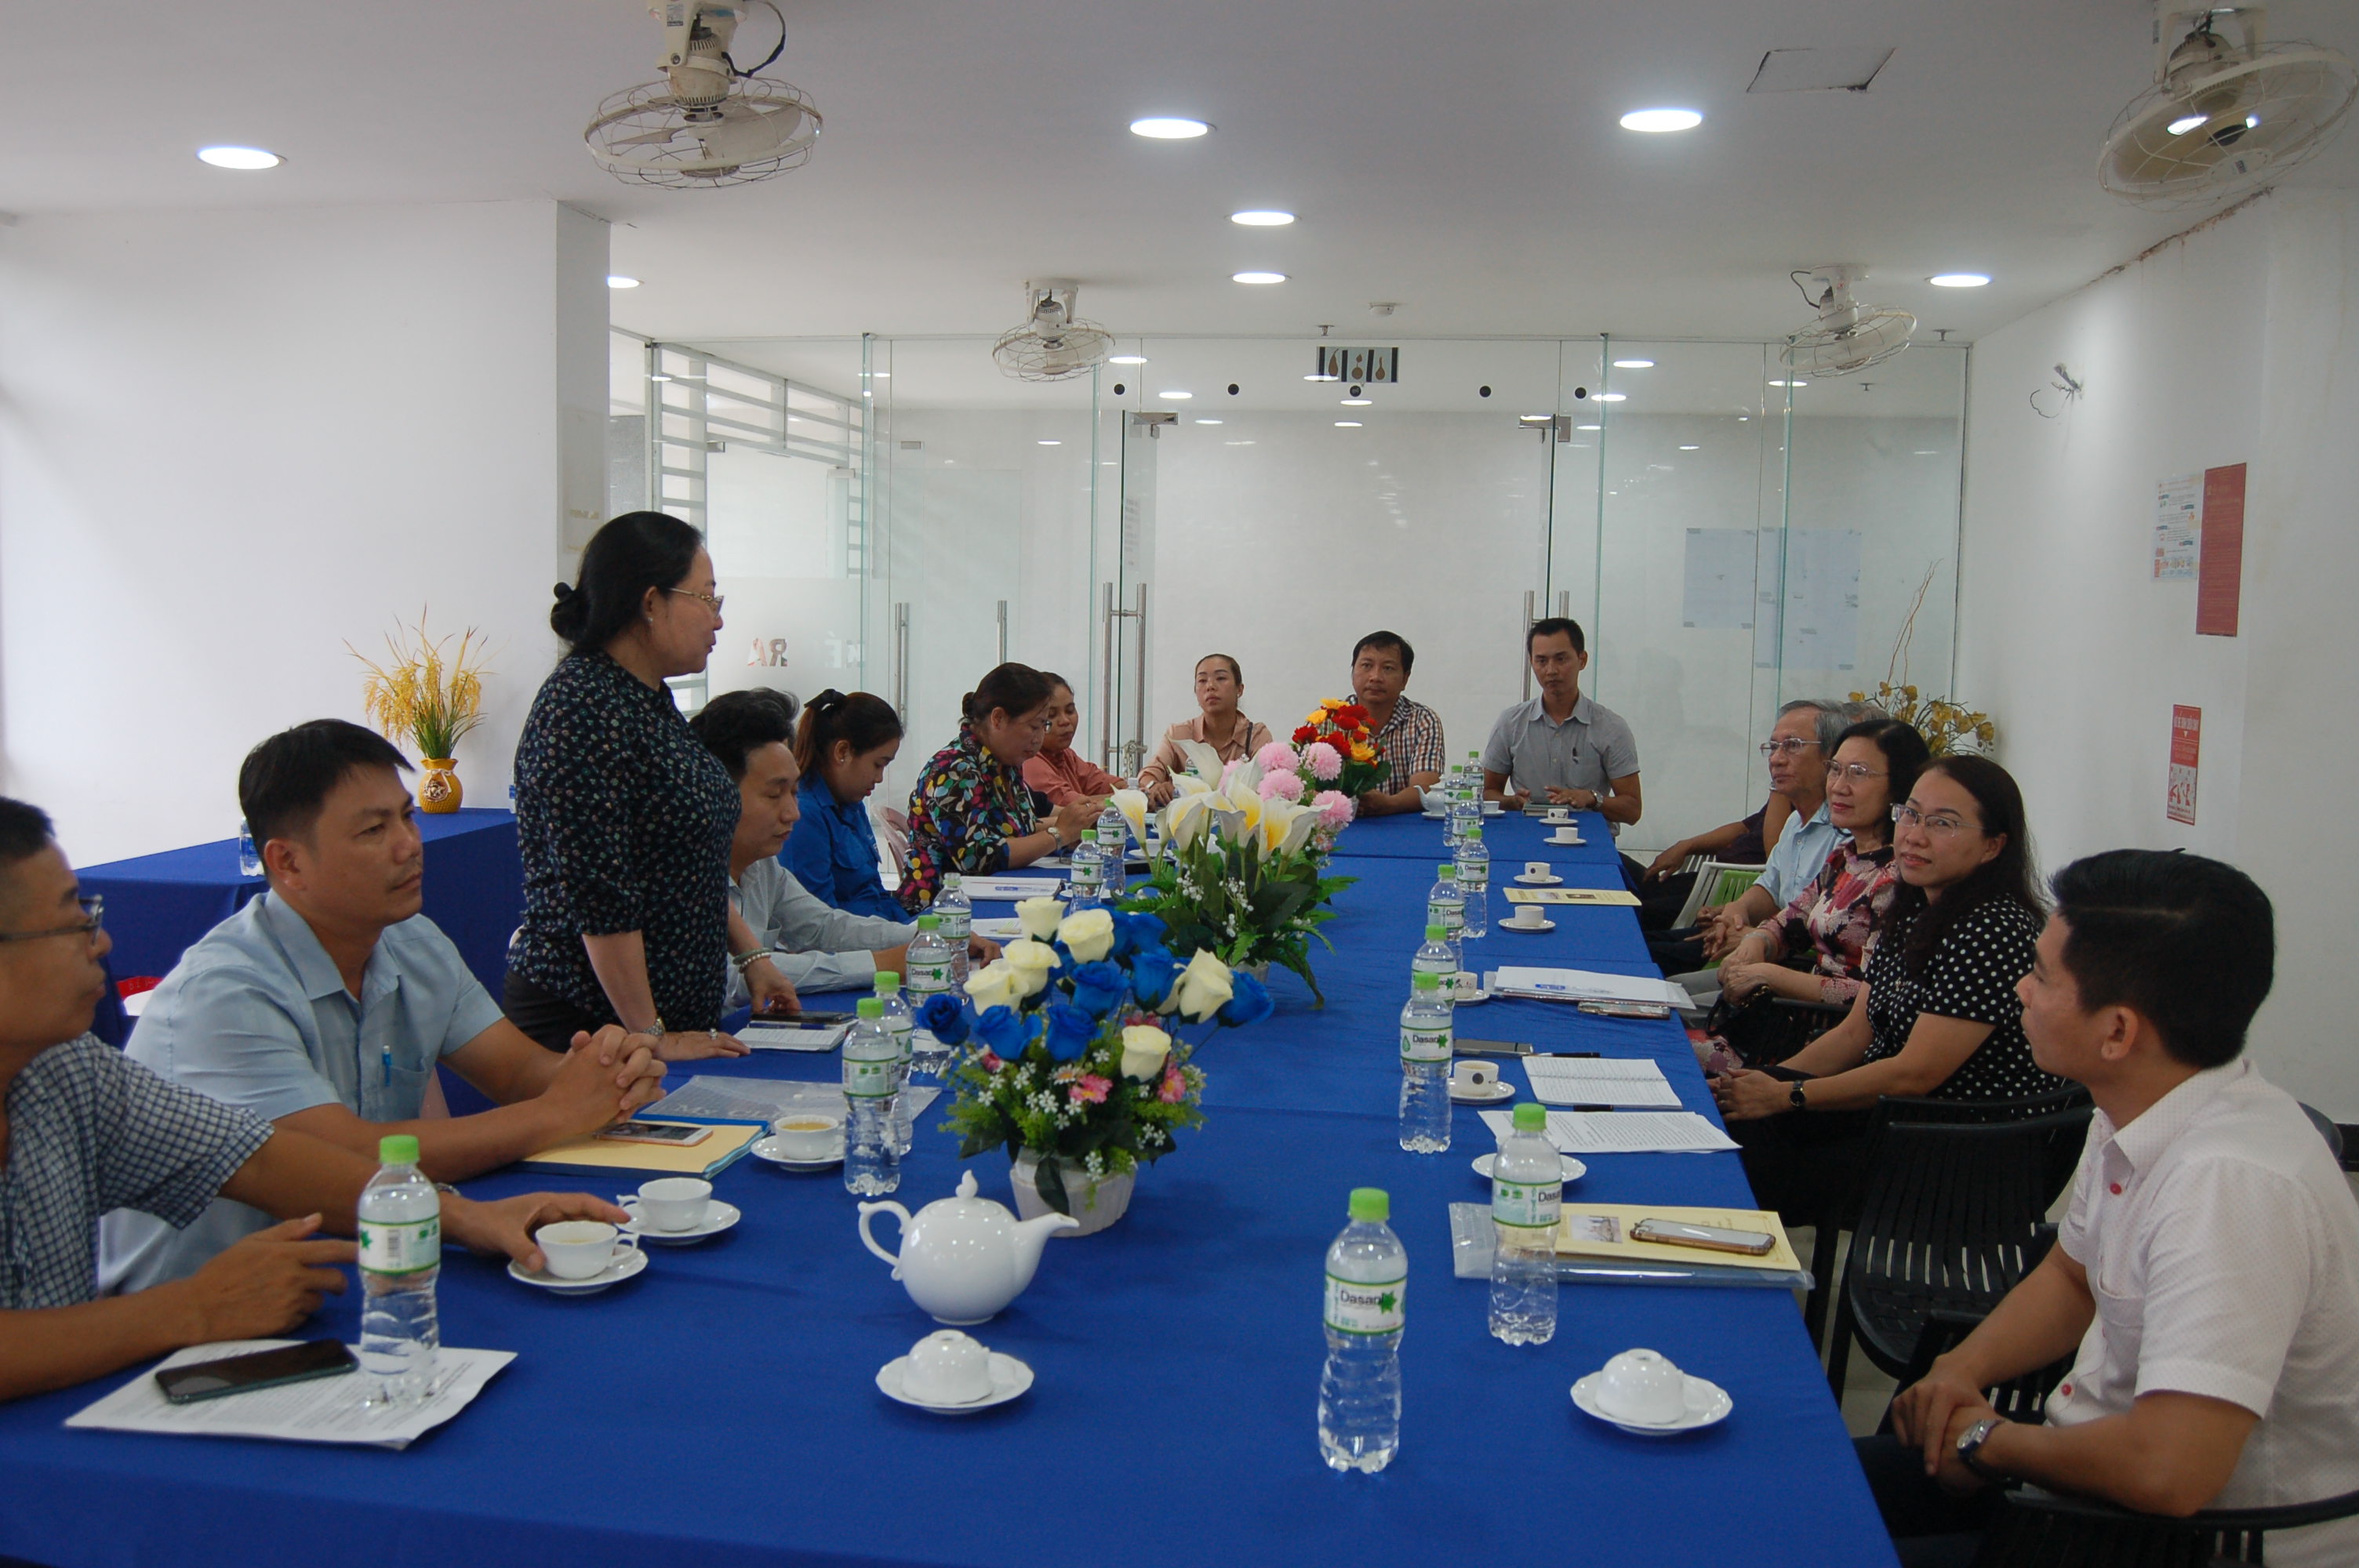 Đảng ủy Phường 5, Quận 8 làm việc với Chi ủy Chung cư Giai Việt để chuẩn bị thành lập các tổ chức chính trị - xã hội trong chung cư.
            Ảnh: Thành Sáng